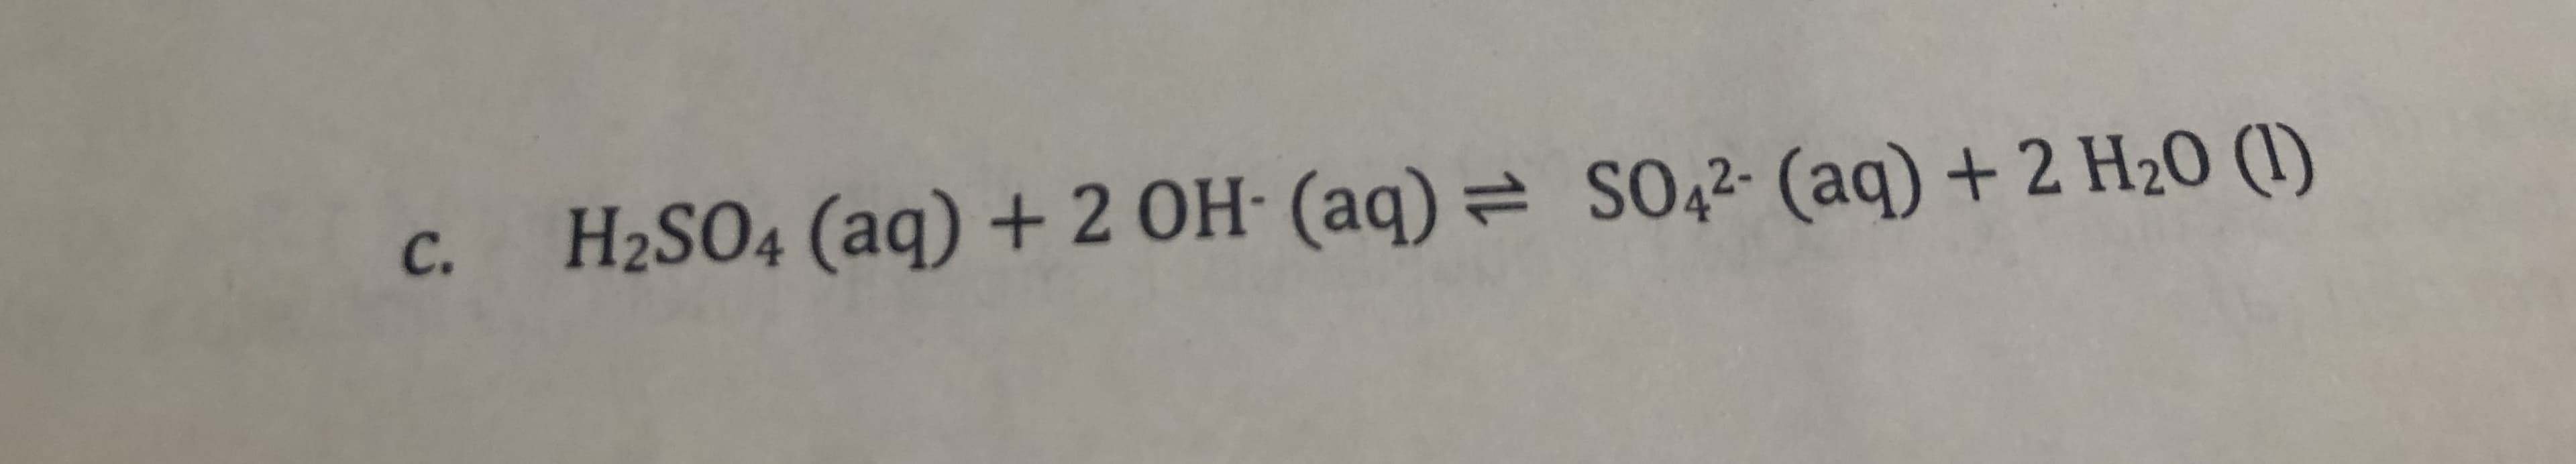 SO42 (aq) + 2 H20 ()
H2SO4 (aq) + 2OH (aq)
C.
